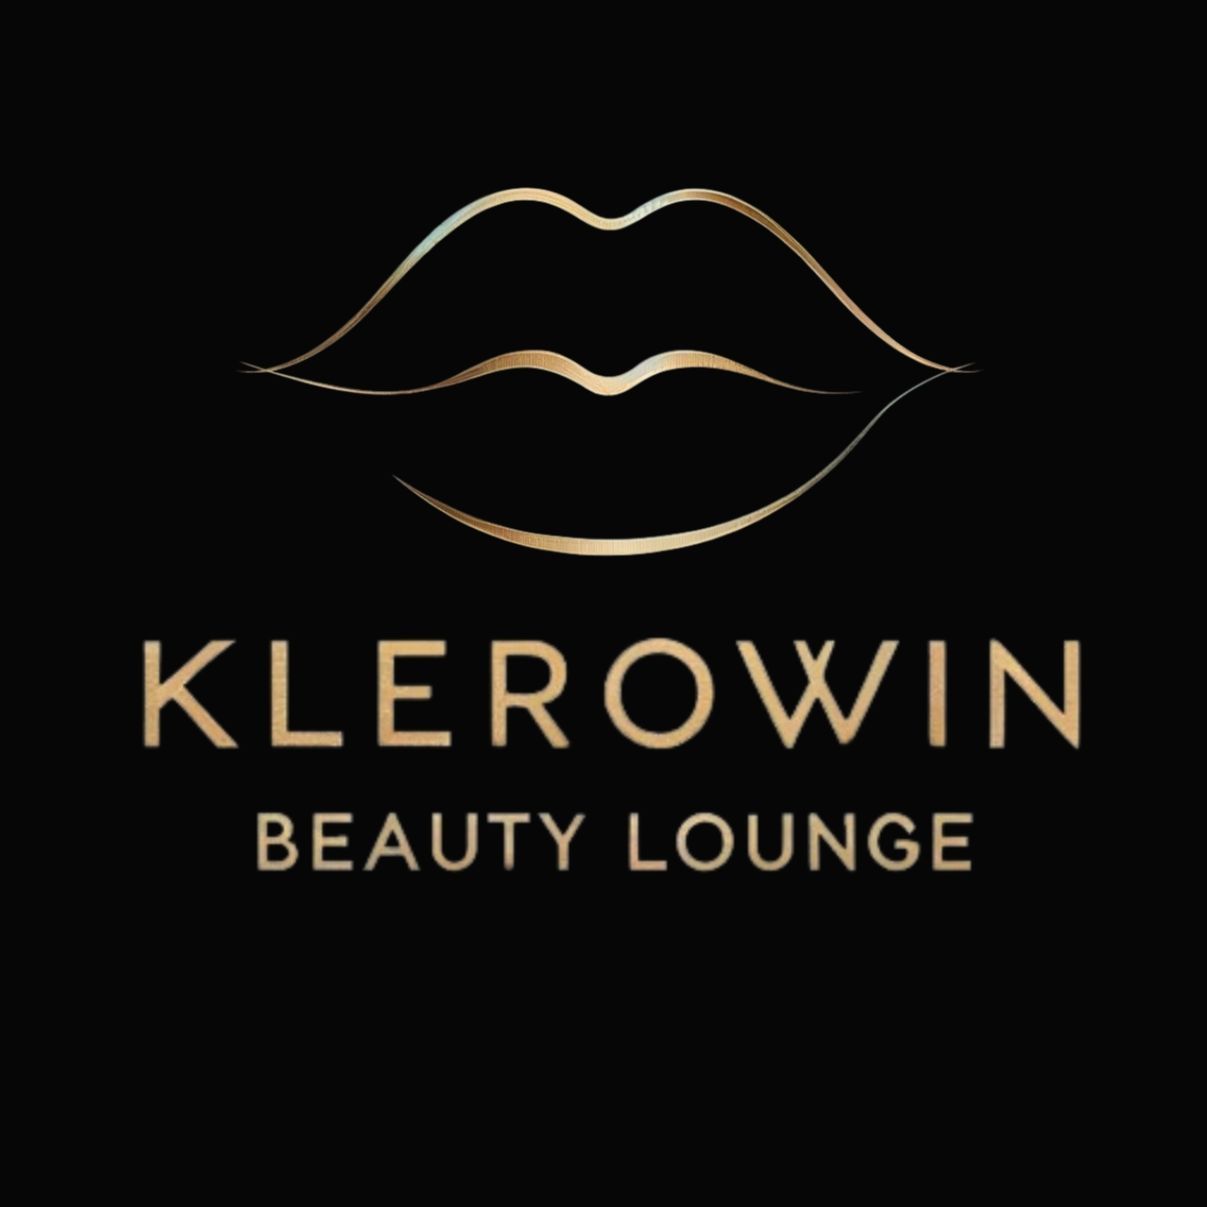 Klerowin Beauty Lounge, Tokarnia 728, Wejście przez salon fryzjerski B&M, 32-436, Tokarnia